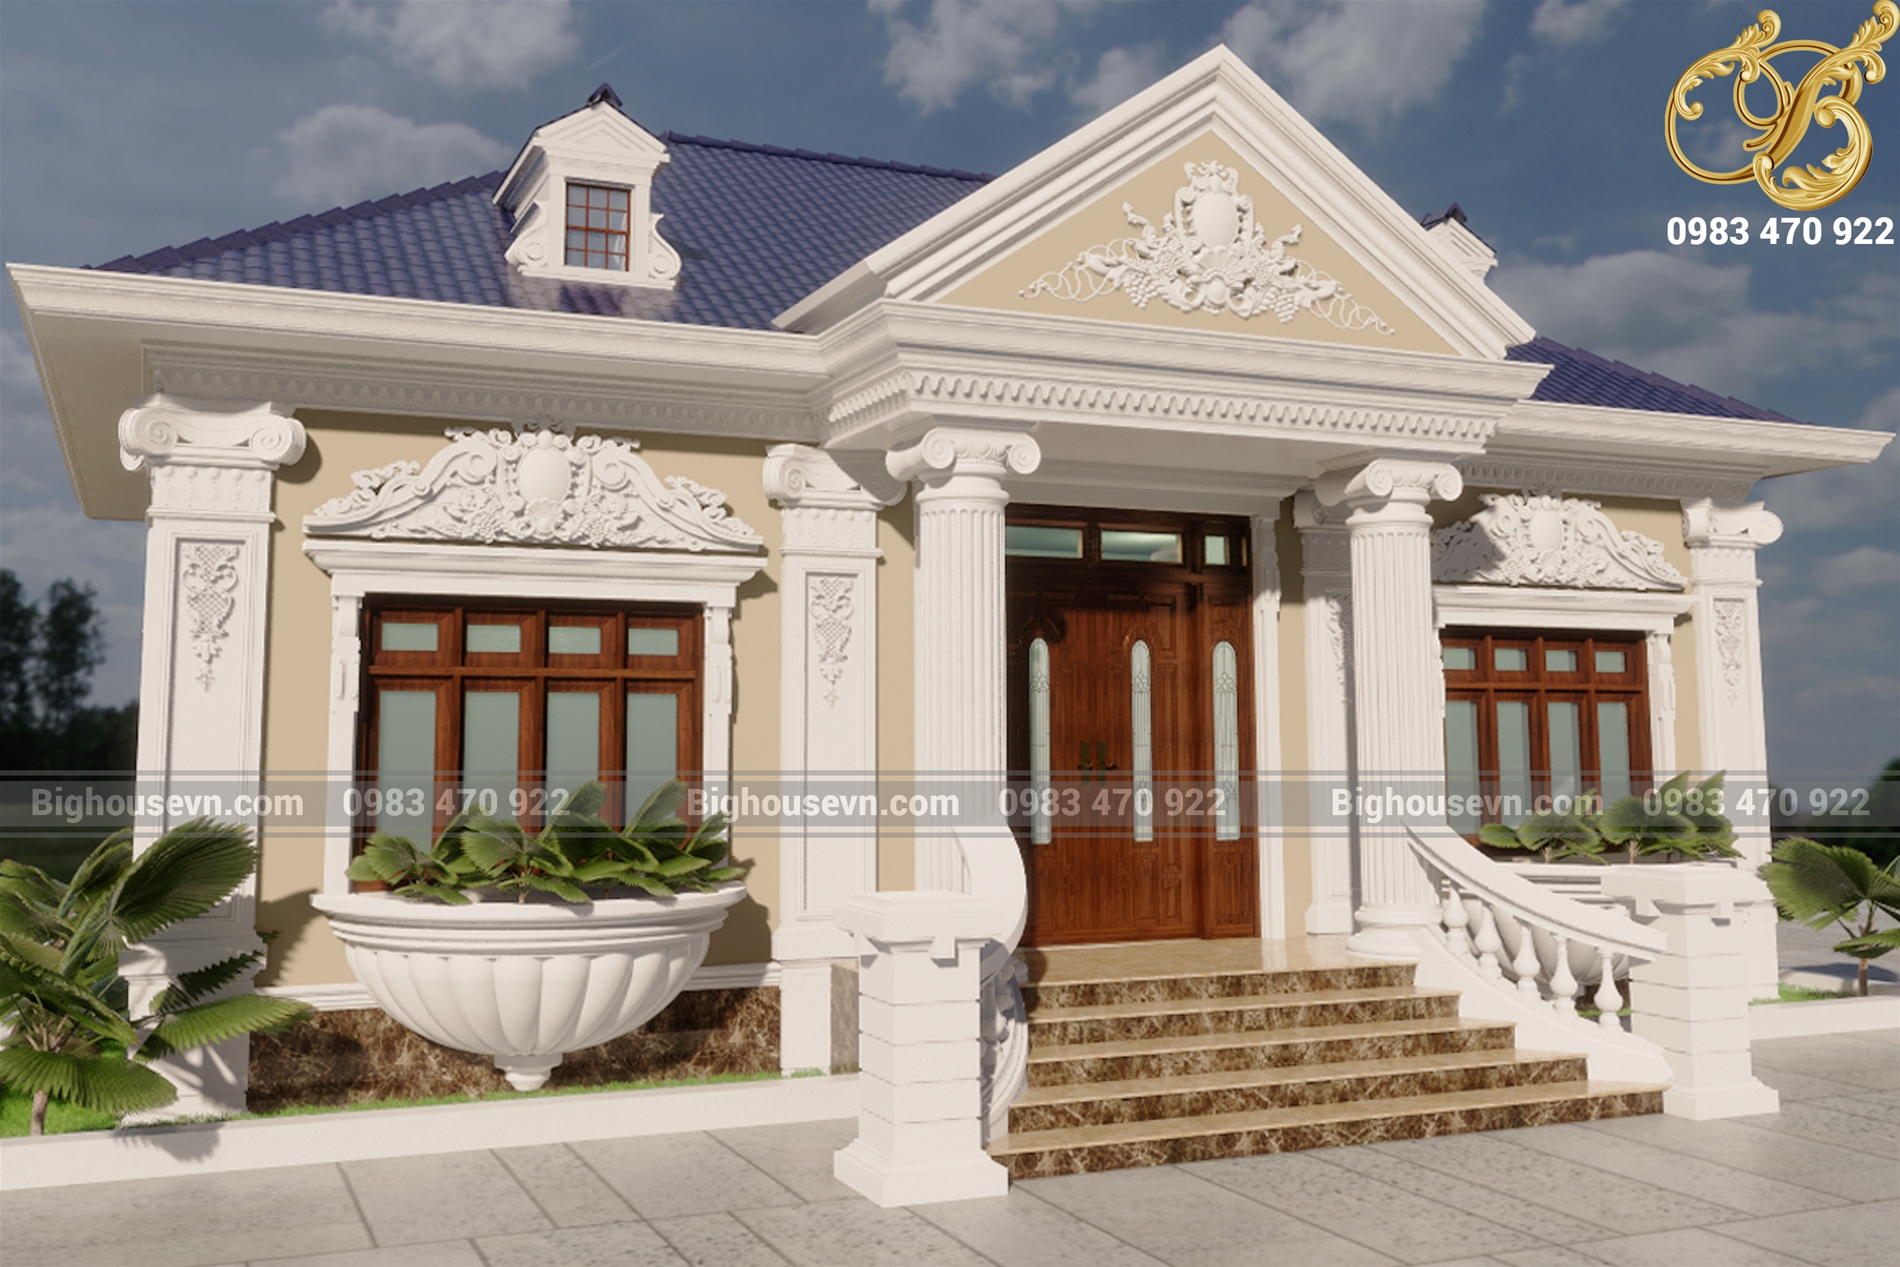 Thiết kế nhà đẹp cấp 4 mái thái hiện đại 8x13m phong cách mới 2016 anh Võng  Đồng Nai - NC4211015A - 400+ Mẫu Nhà Biệt Thự Đẹp Nhất Vì chất lượng